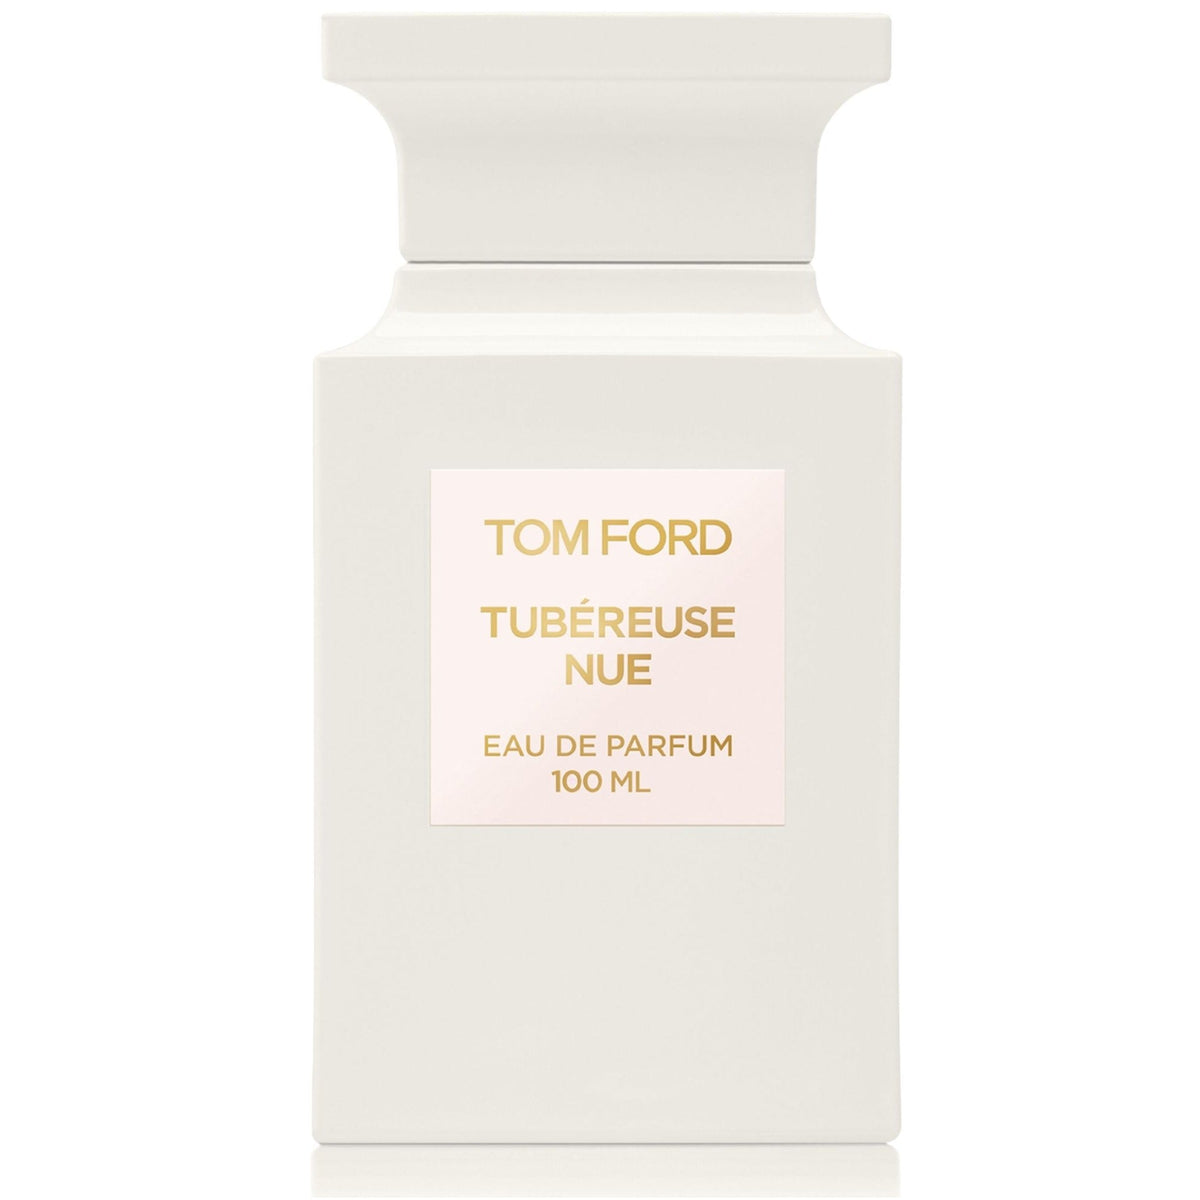 Tom Ford Tubereuse Nue - Eau de Parfum, 100 ml